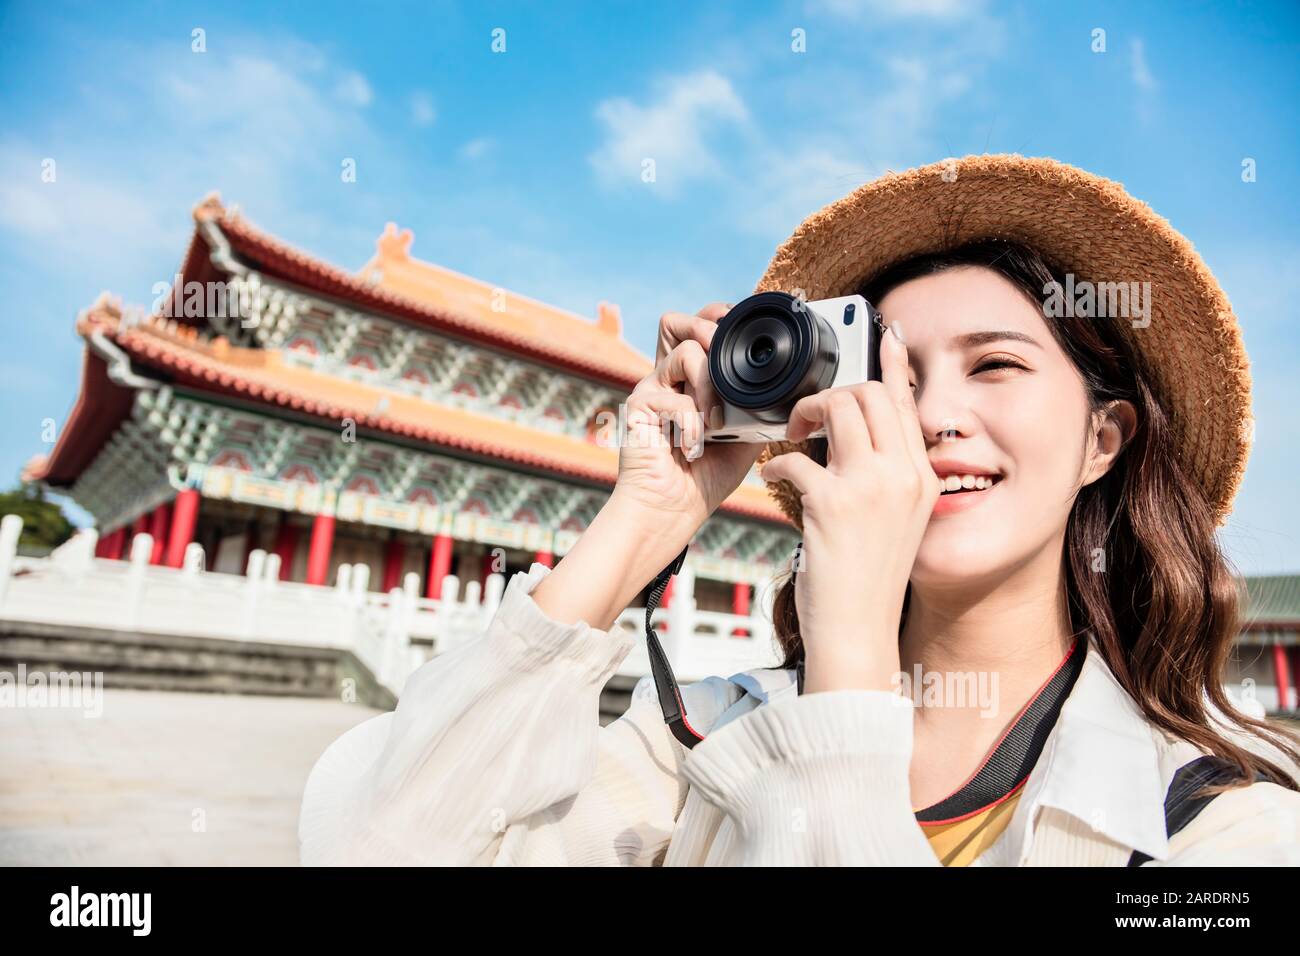 Voyageur féminin asiatique photographiant des temples en Asie Banque D'Images